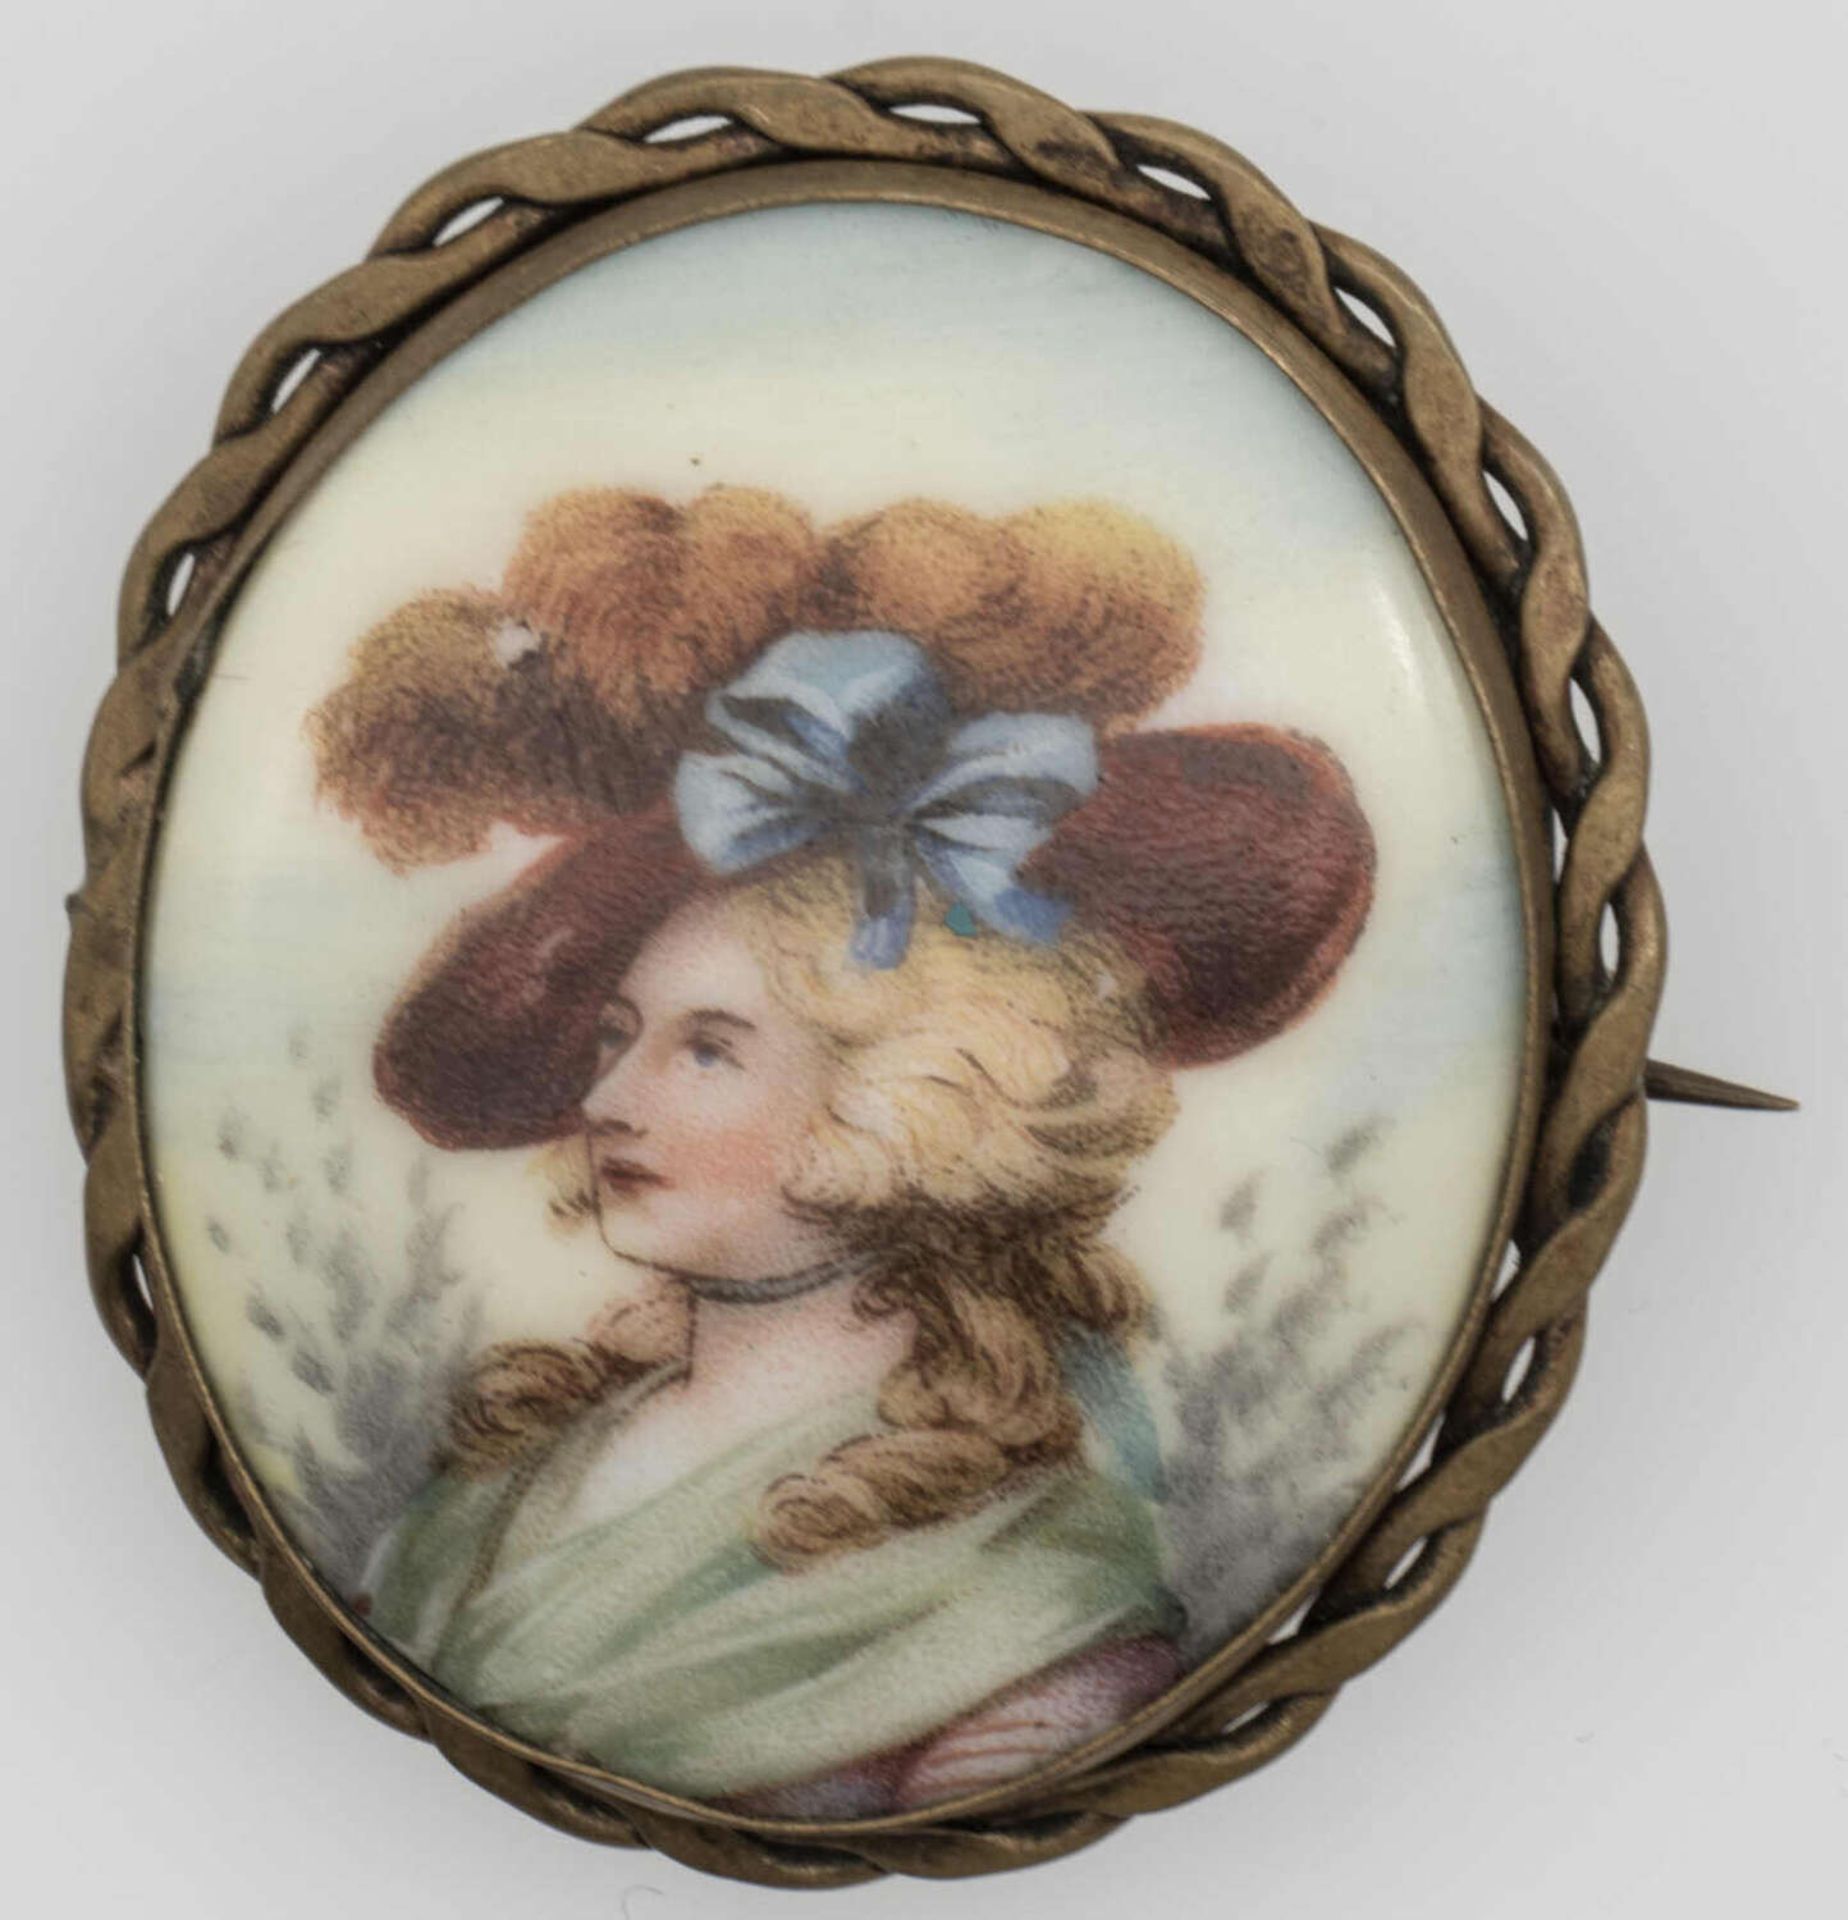 Porzellanbrosche, mit Umdruckdekor "feine Dame", auf der Rückseite Formnummer 5544-40. Höhe ca. 4